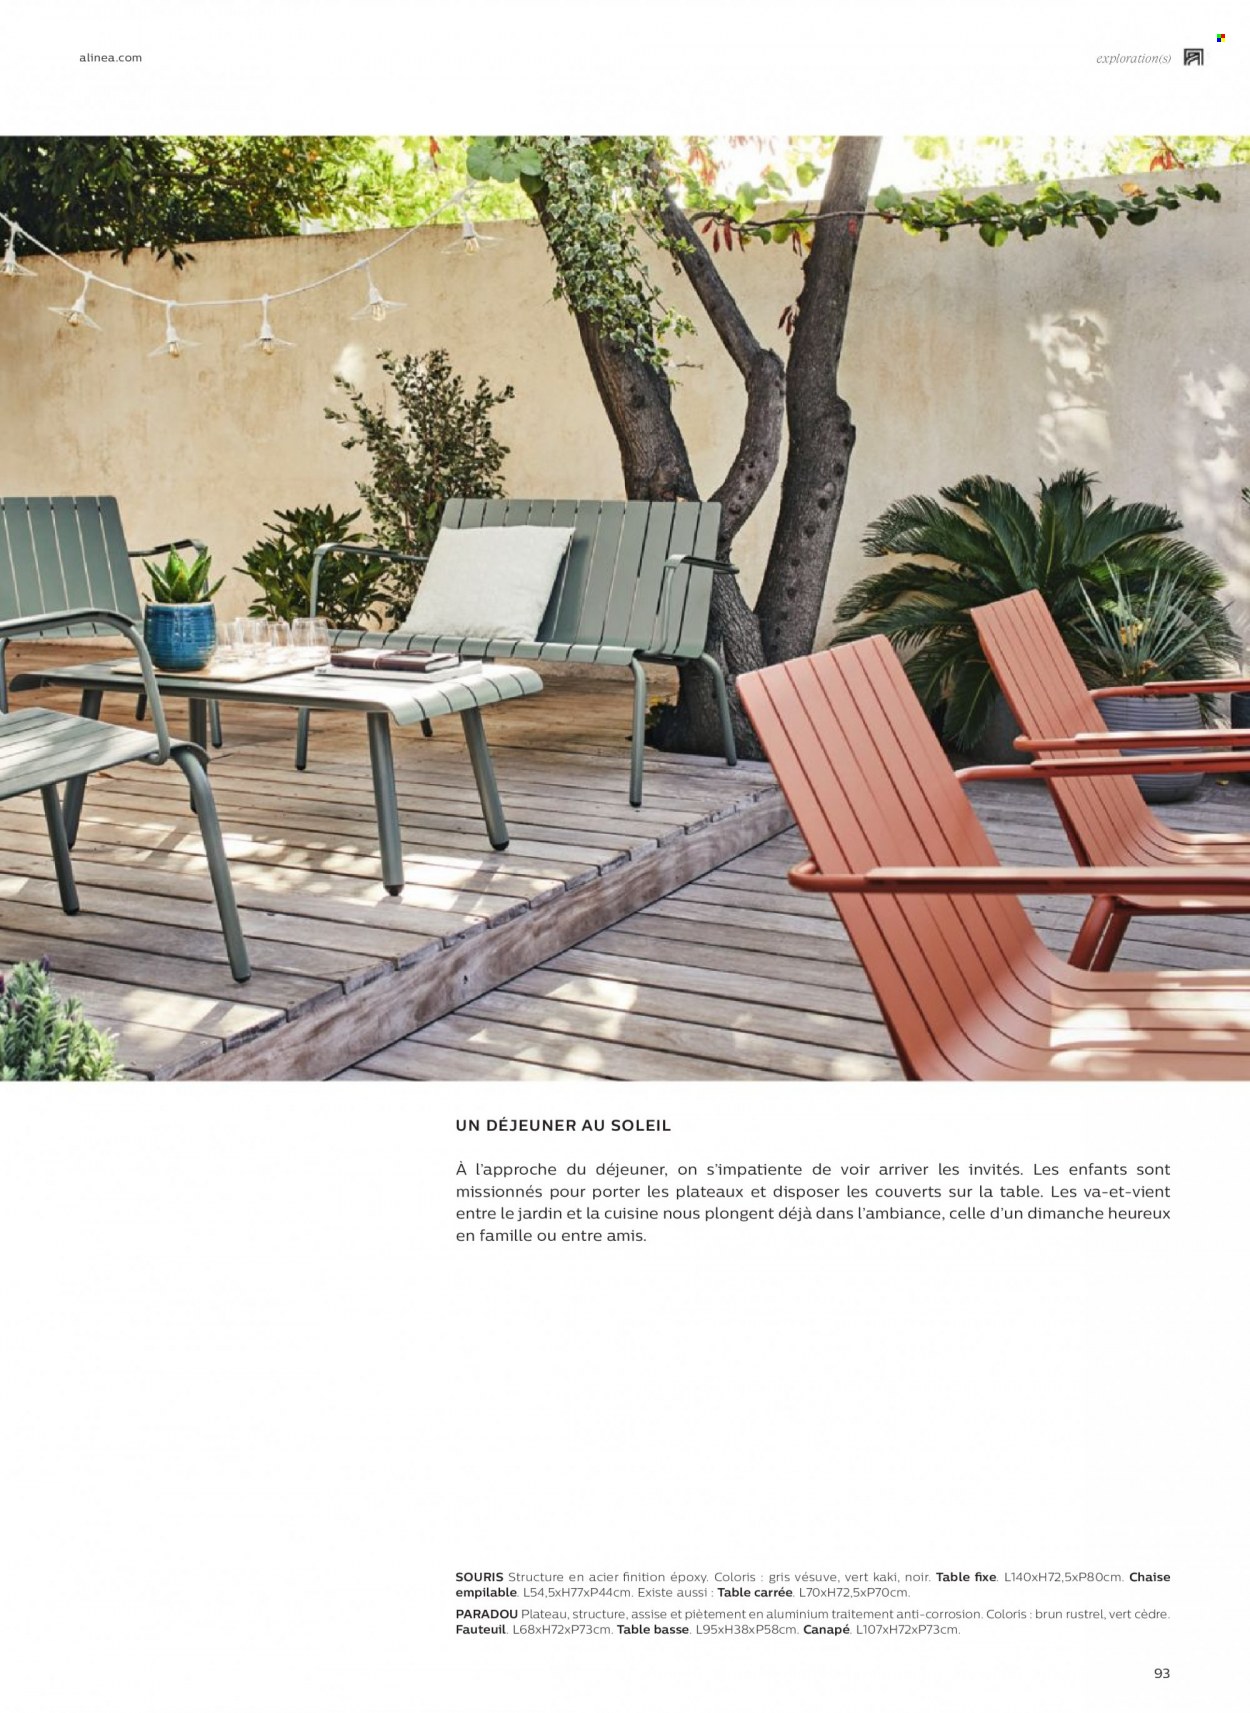 thumbnail - Catalogue alinea - Produits soldés - table, chaise, couverts, canapé, fauteuil, table basse. Page 93.